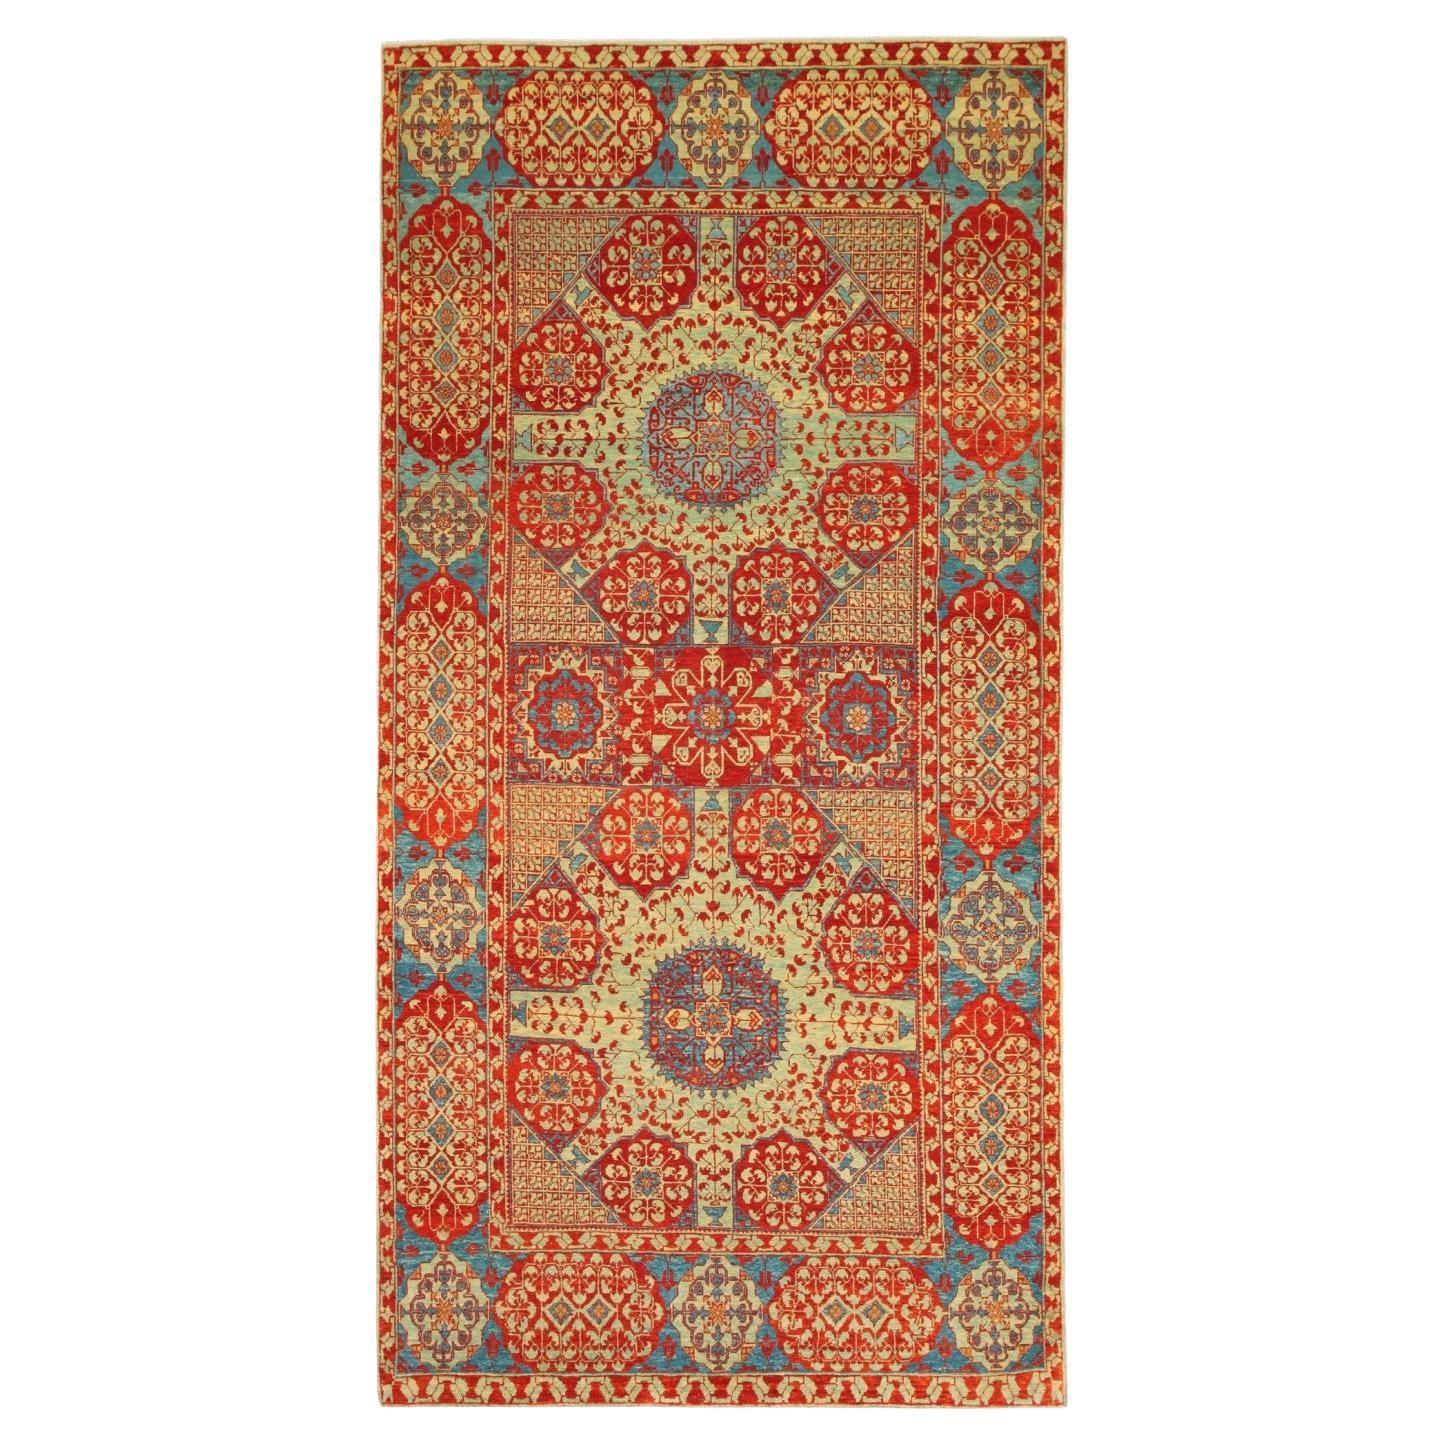 Ararat Rugs Mamluke Teppich mit Becher-Motiv, Antique Revival Teppich, natürlich gefärbt